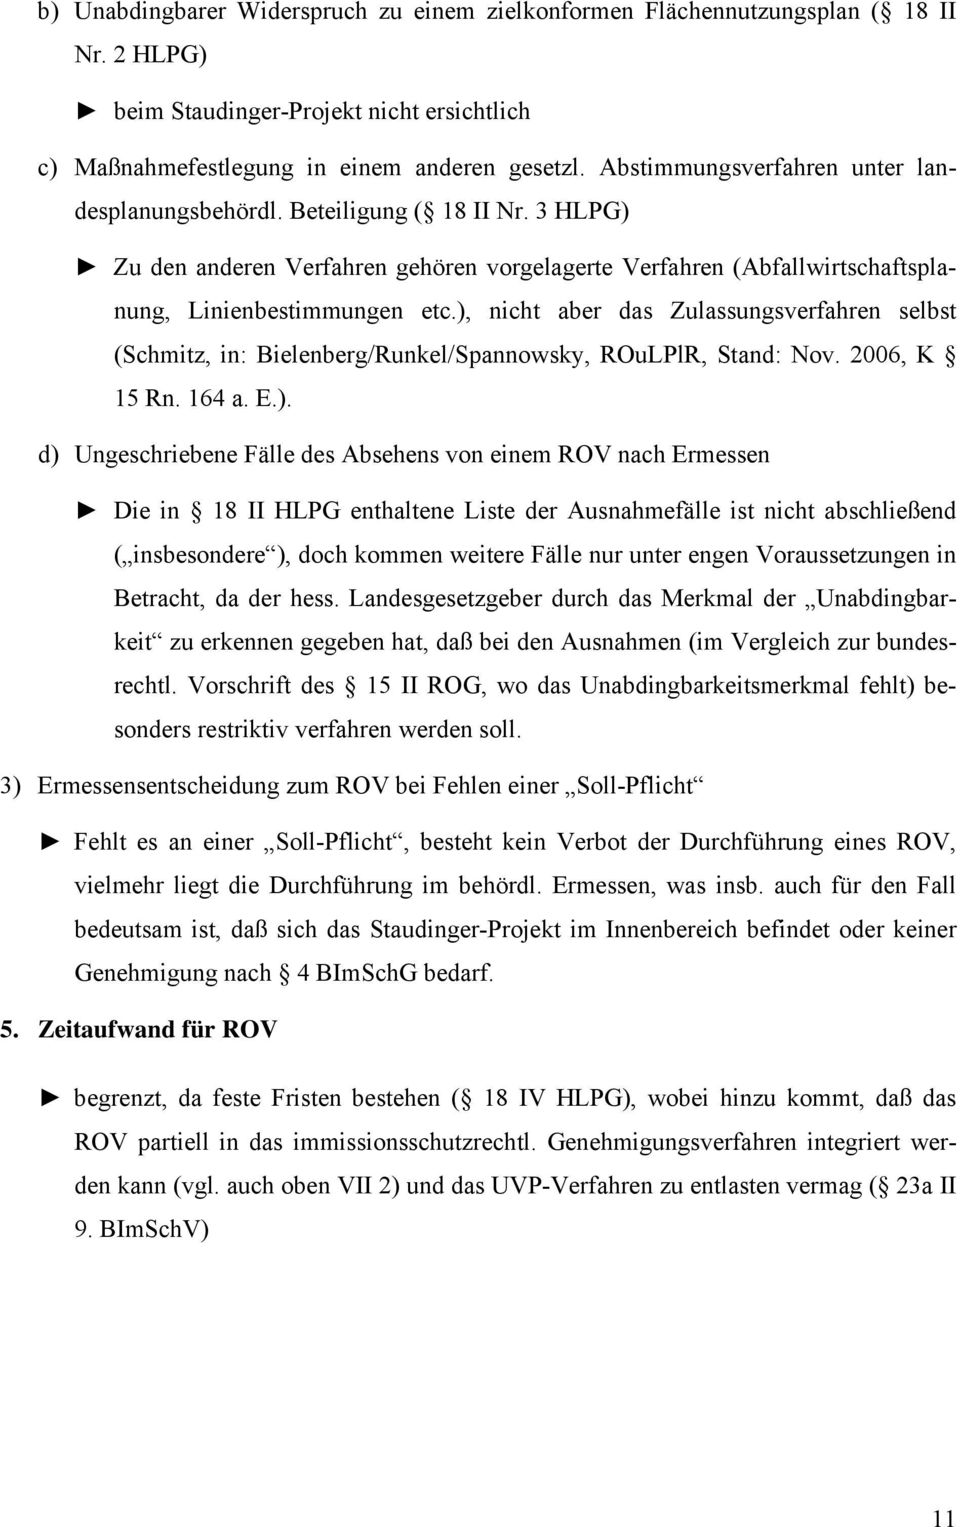 ), nicht aber das Zulassungsverfahren selbst (Schmitz, in: Bielenberg/Runkel/Spannowsky, ROuLPlR, Stand: Nov. 2006, K 15 Rn. 164 a. E.). d) Ungeschriebene Fälle des Absehens von einem ROV nach